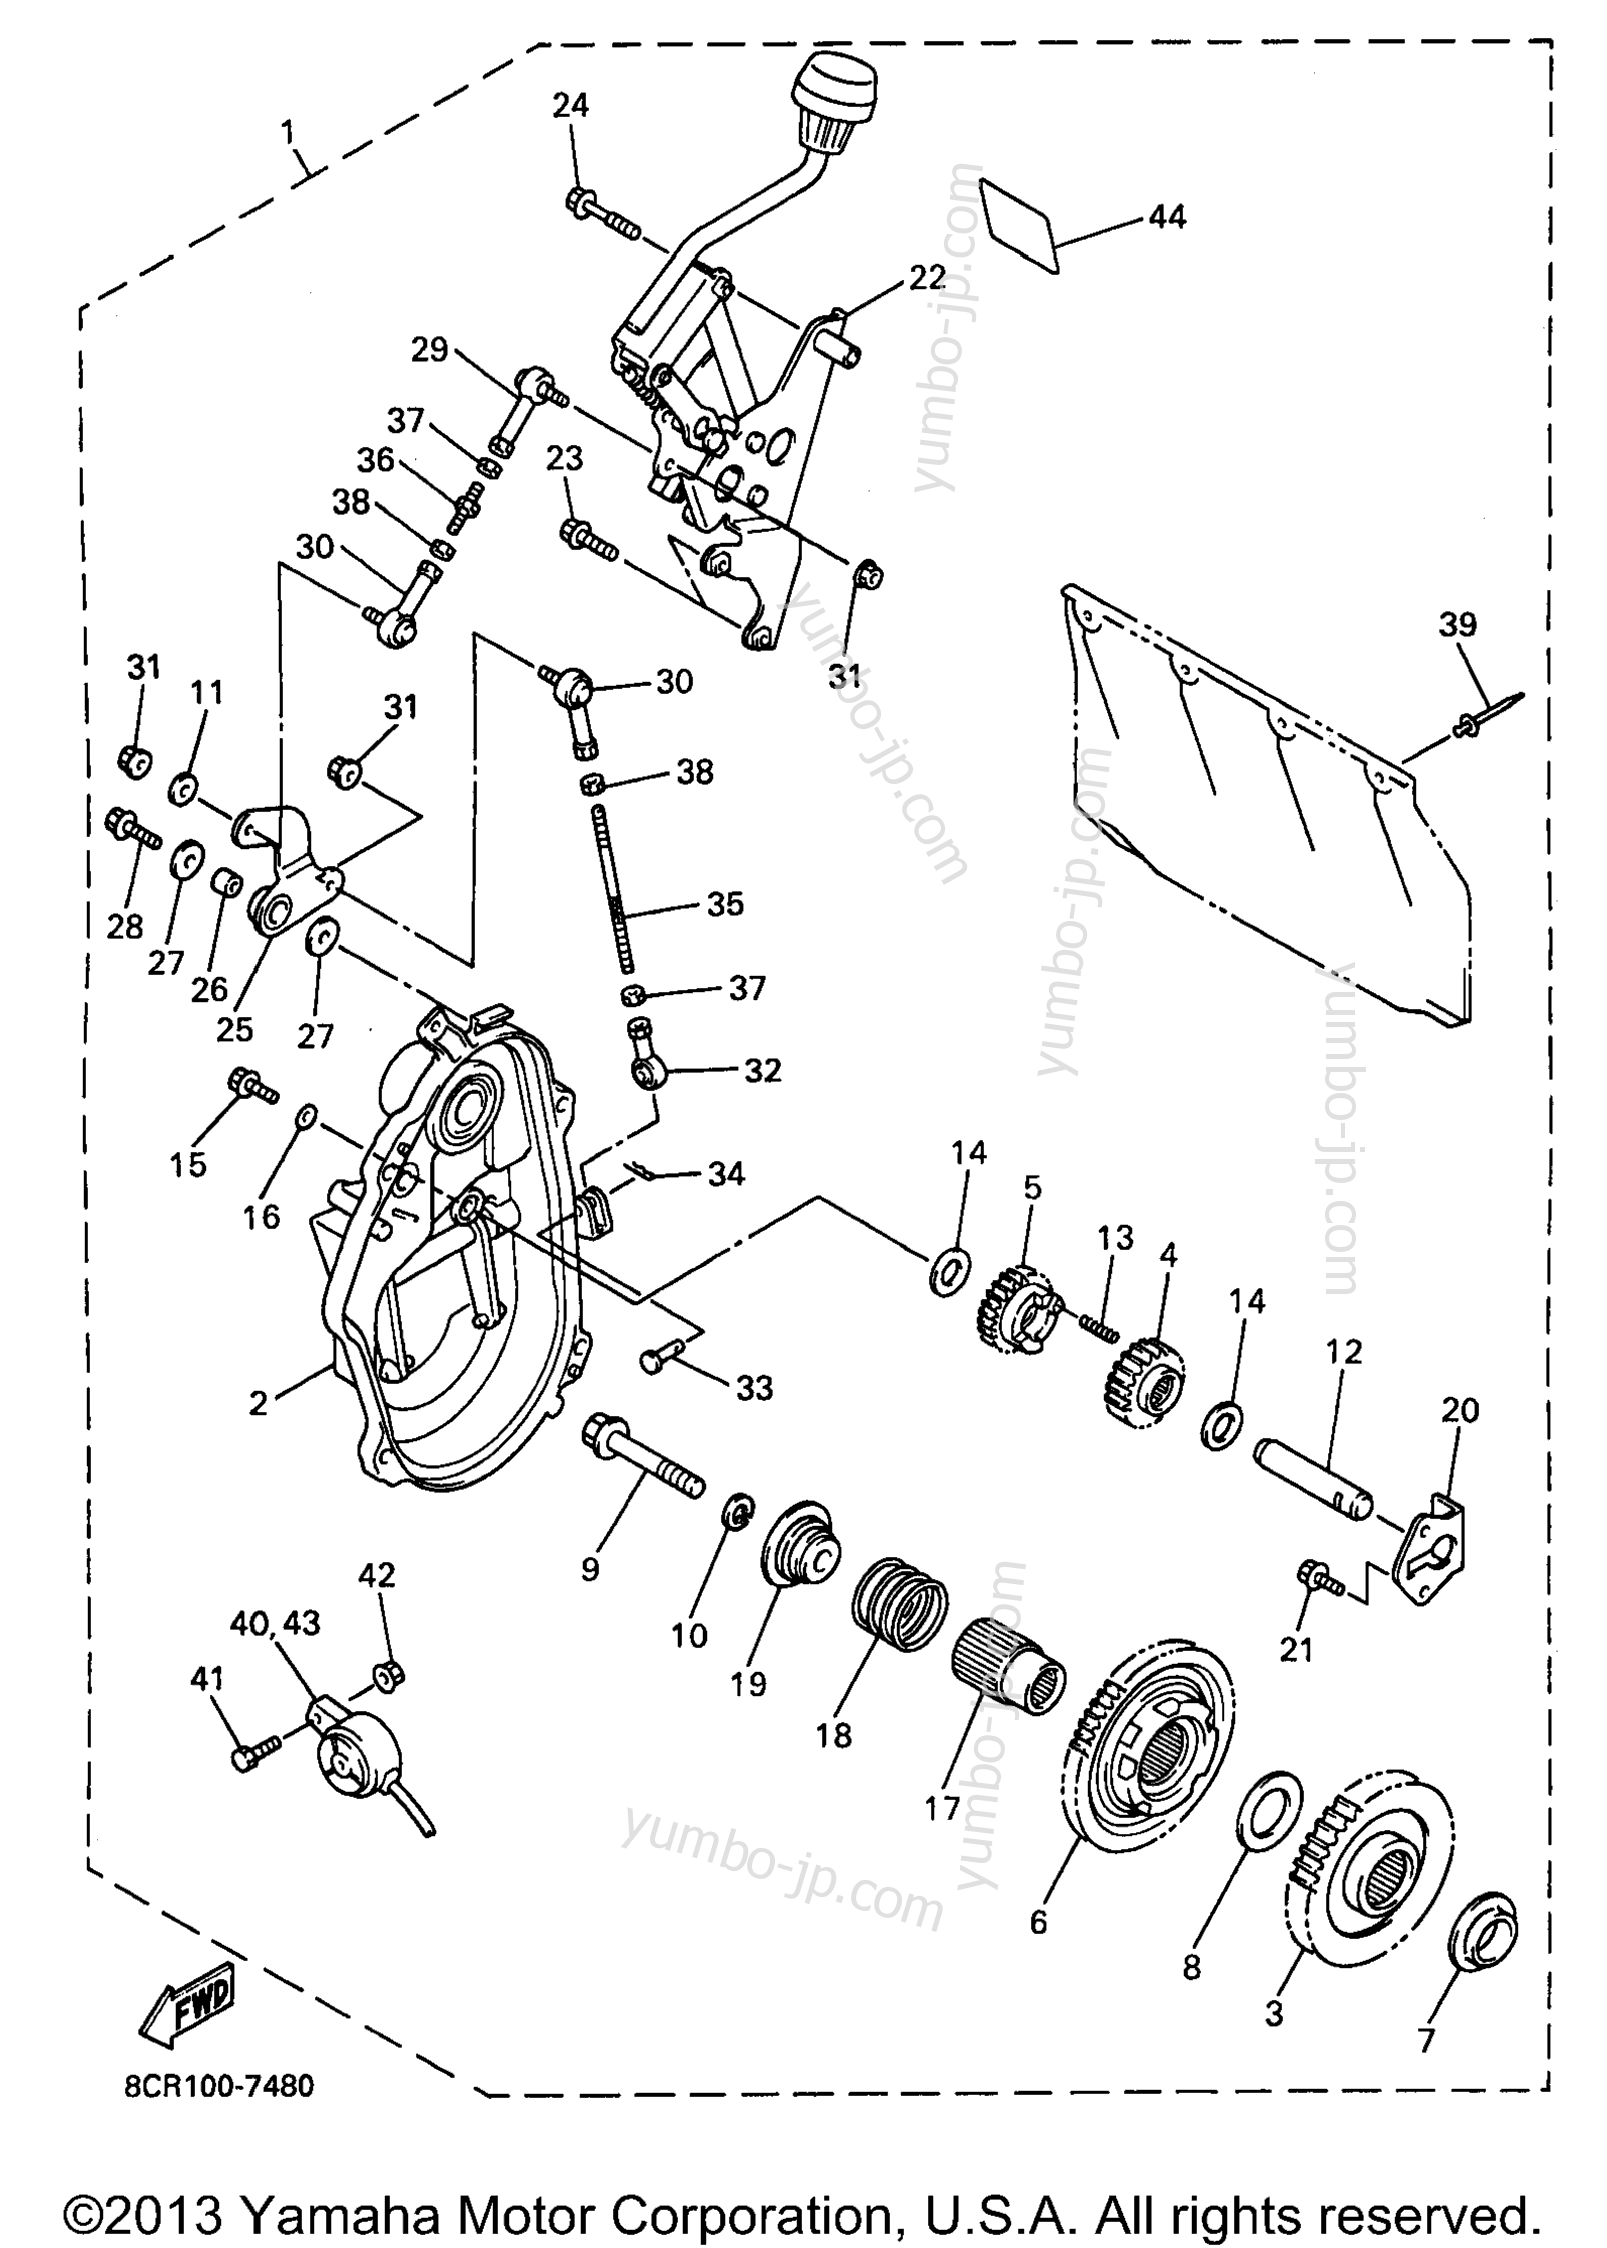 Alternate (Reverse Gear) for snowmobiles YAMAHA VMAX 500 XT (VX500XTA) 1997 year